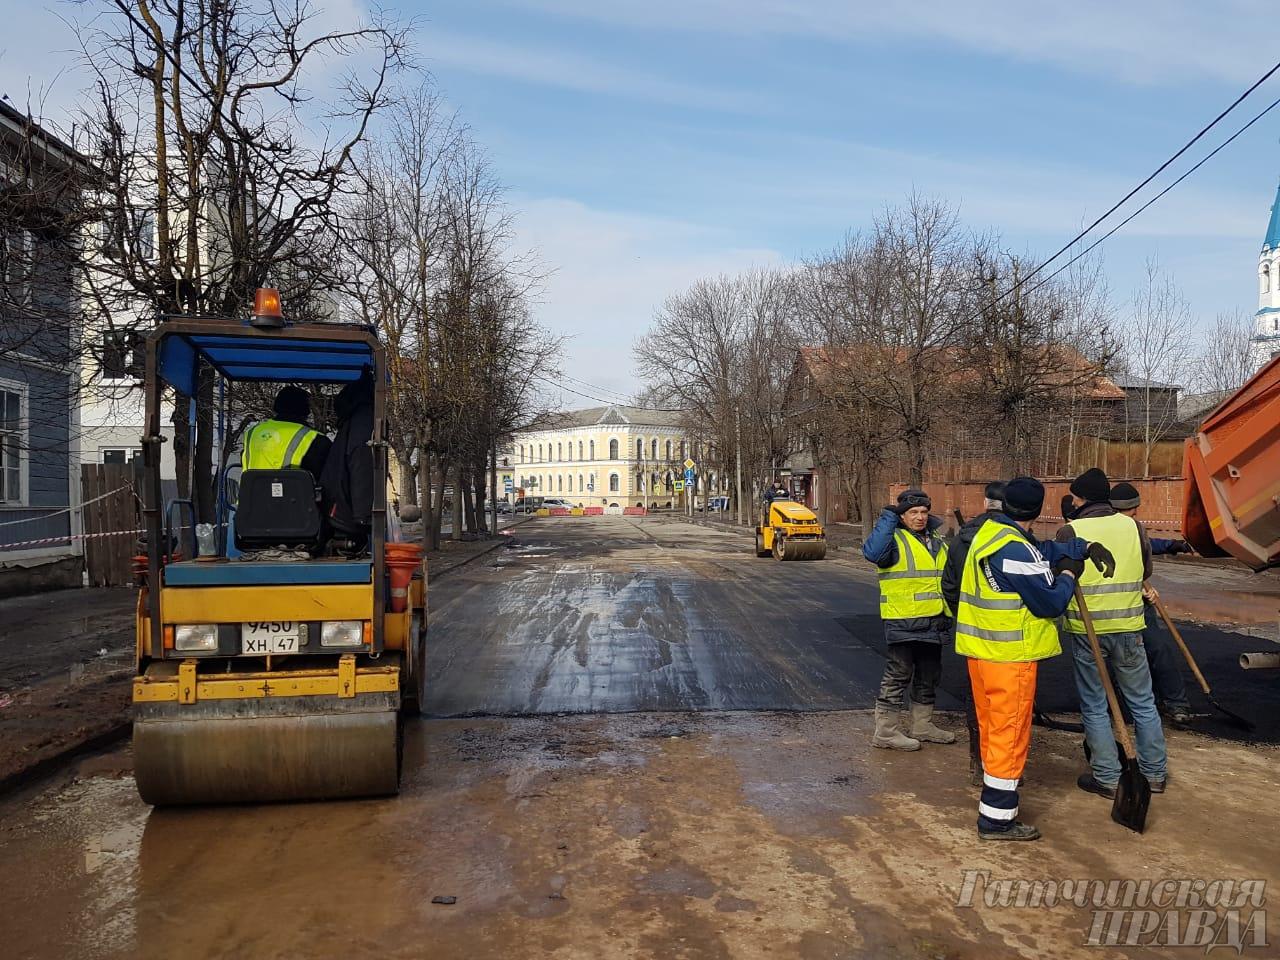 13 адресов: в Гатчине запланирован ремонт дорог на полмиллиарда